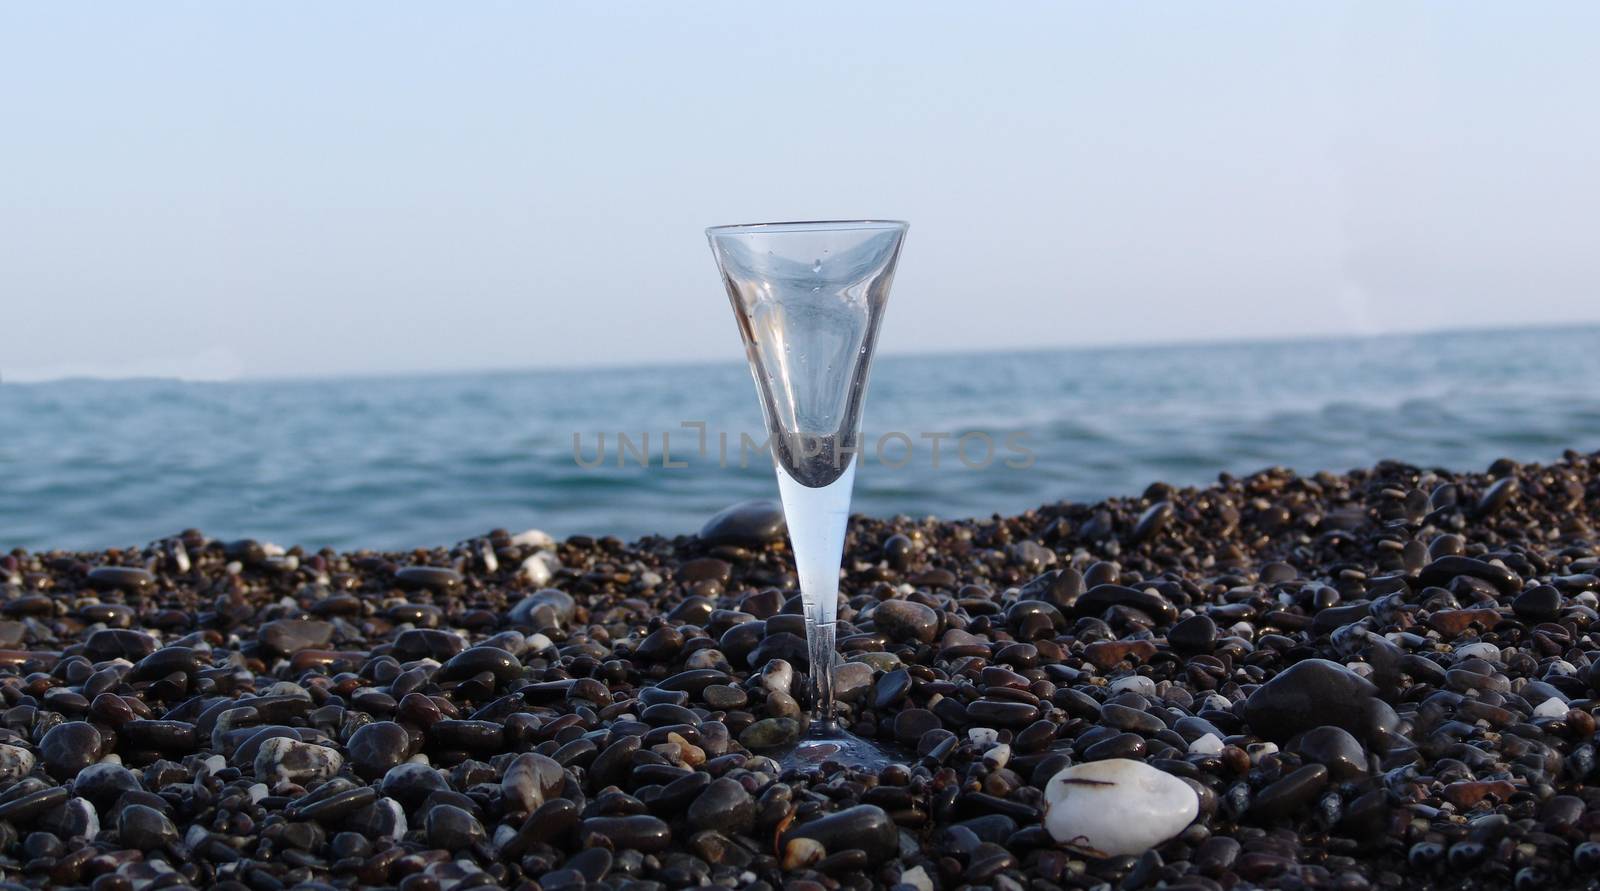 wine glass on stony beach by elena_vz